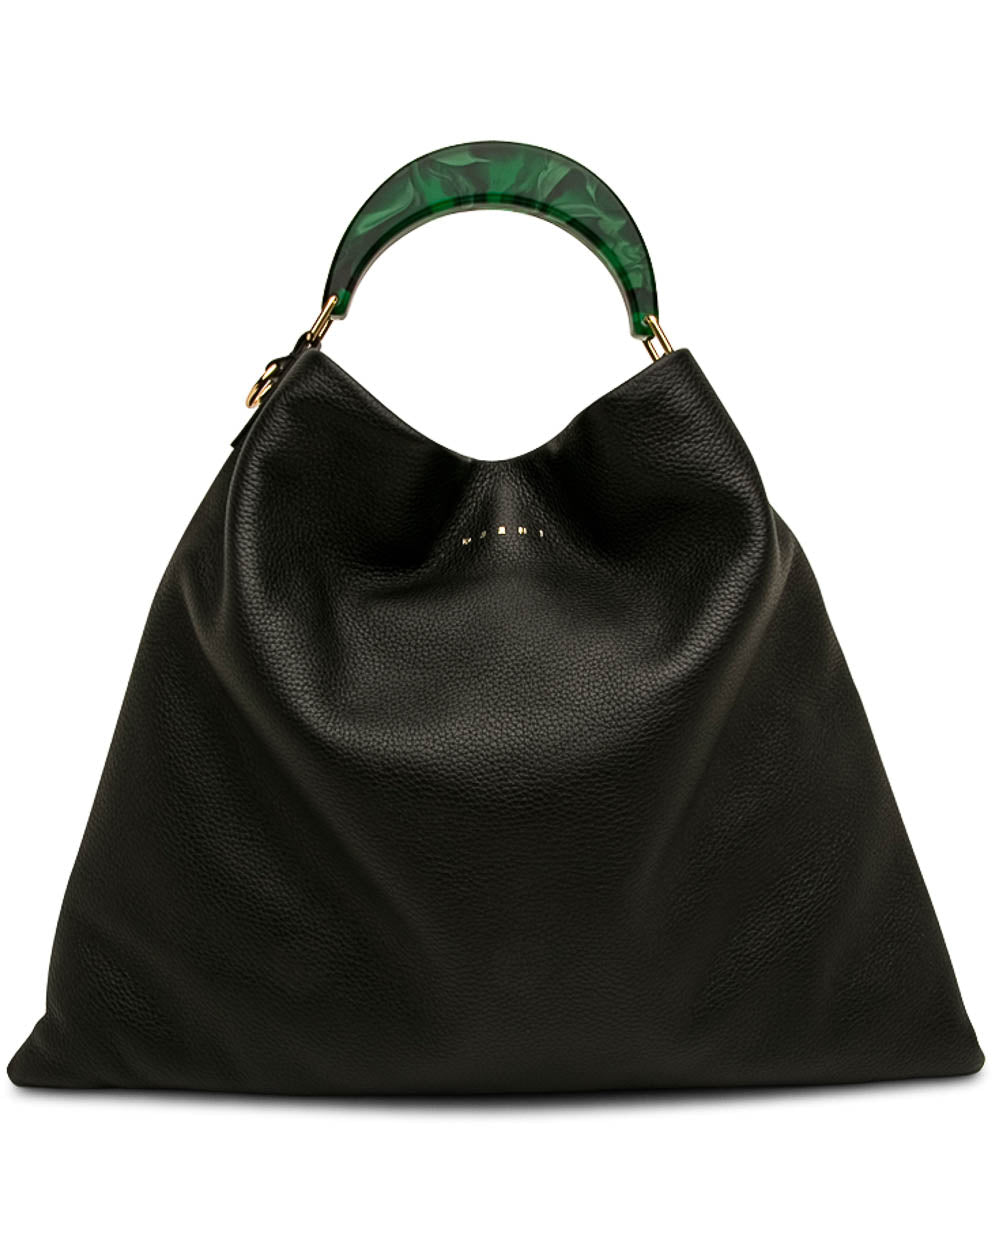 Medium Hobo Bag in Black